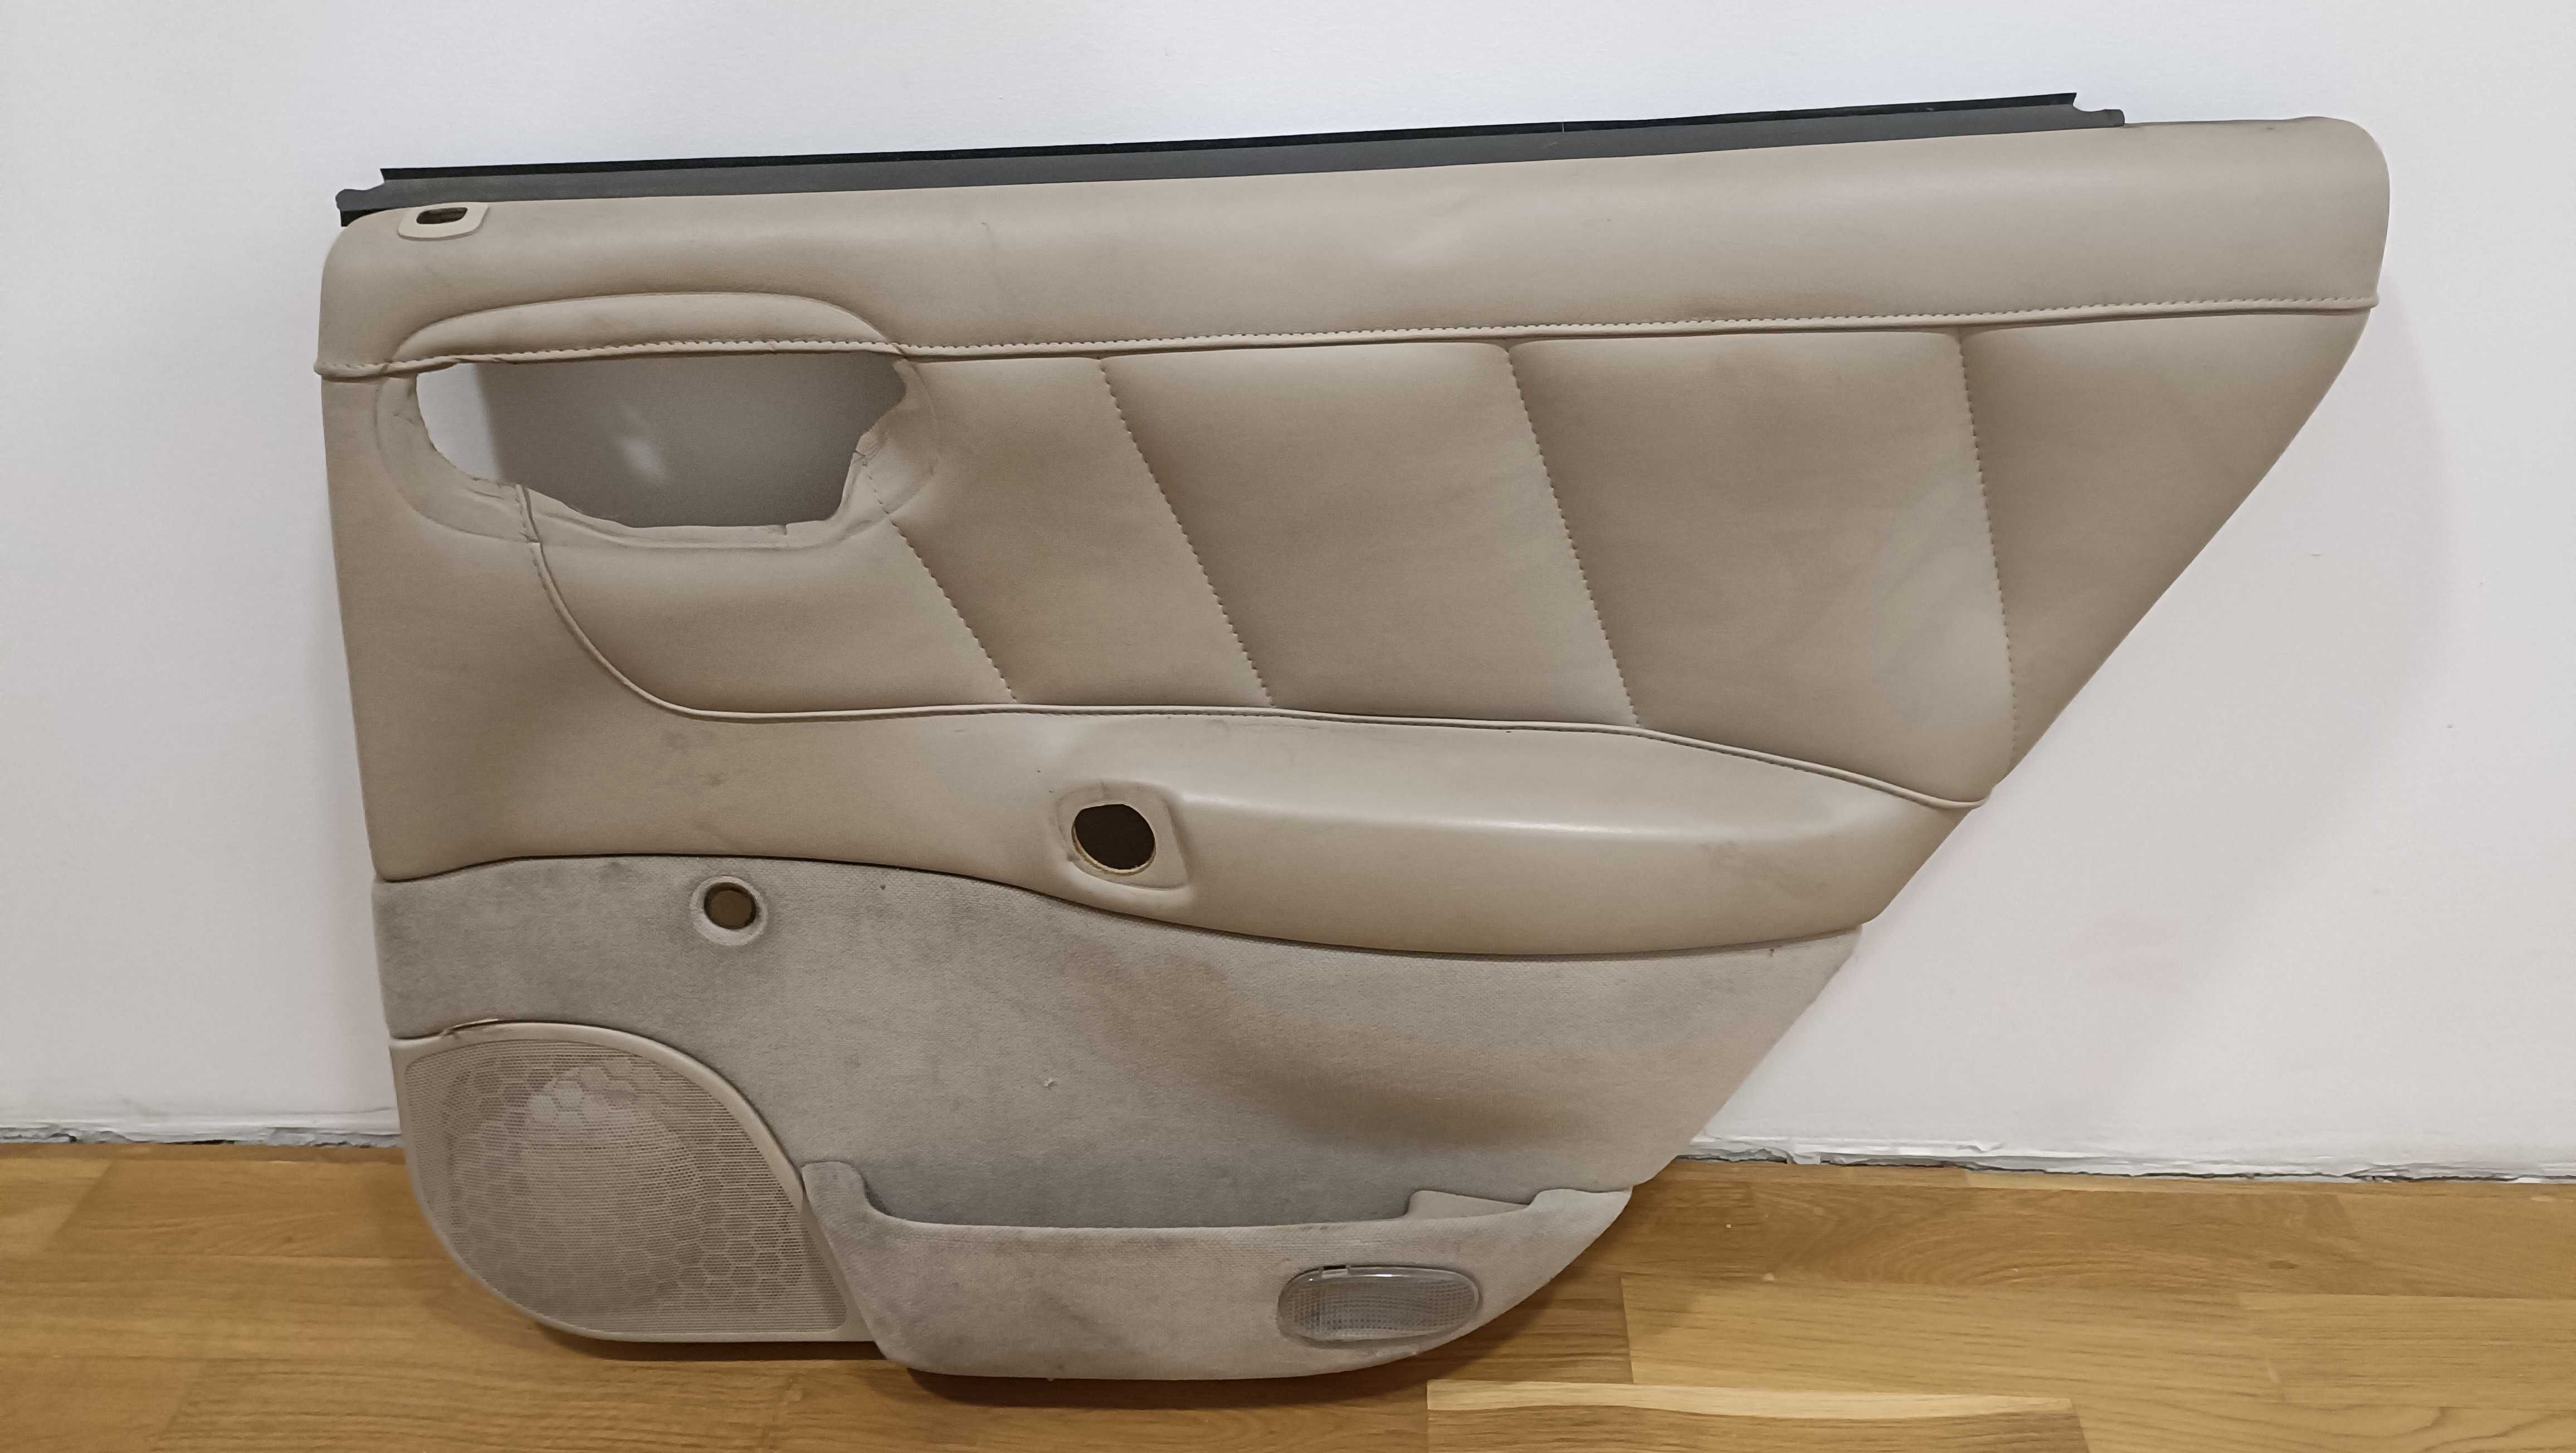 Opel Vectra B kombi/hatchback. Wnętrze, jasne skóry, siedzenia, boczki